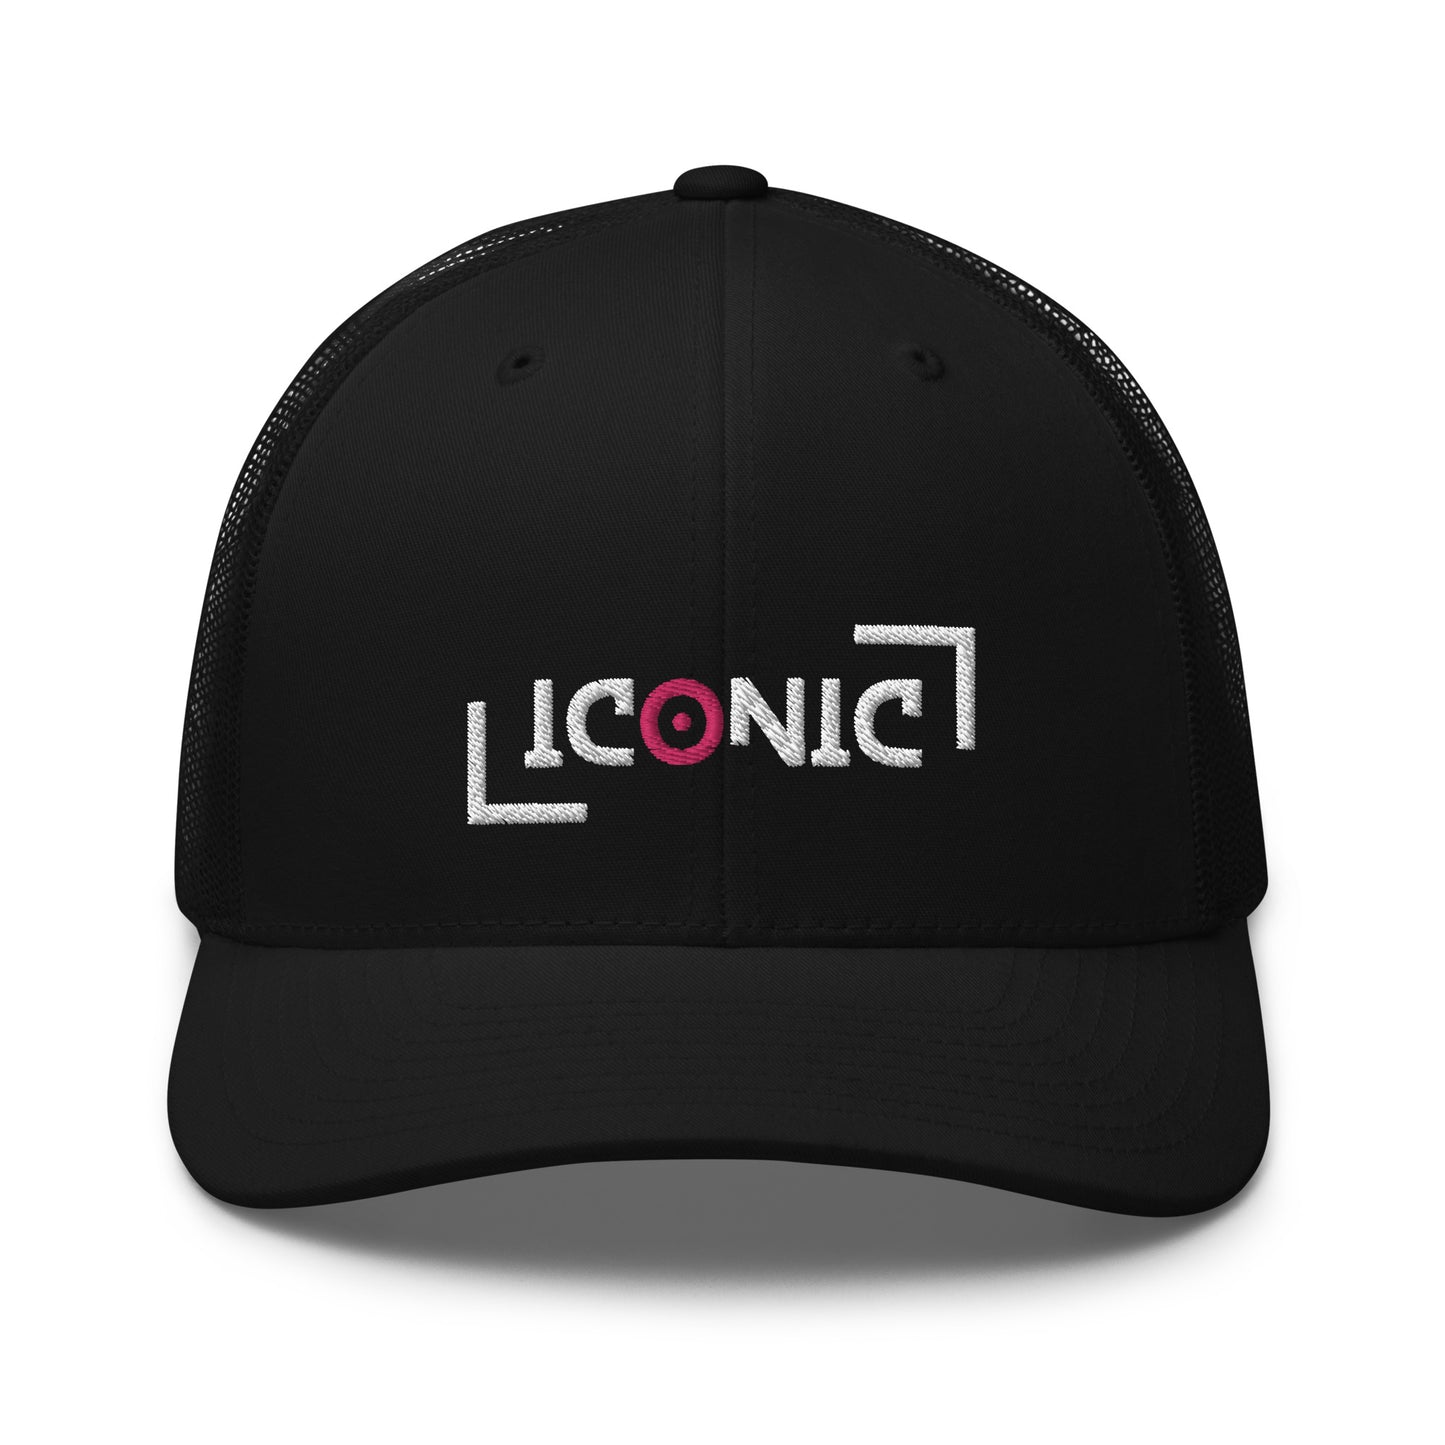 ICONIC Trucker Cap